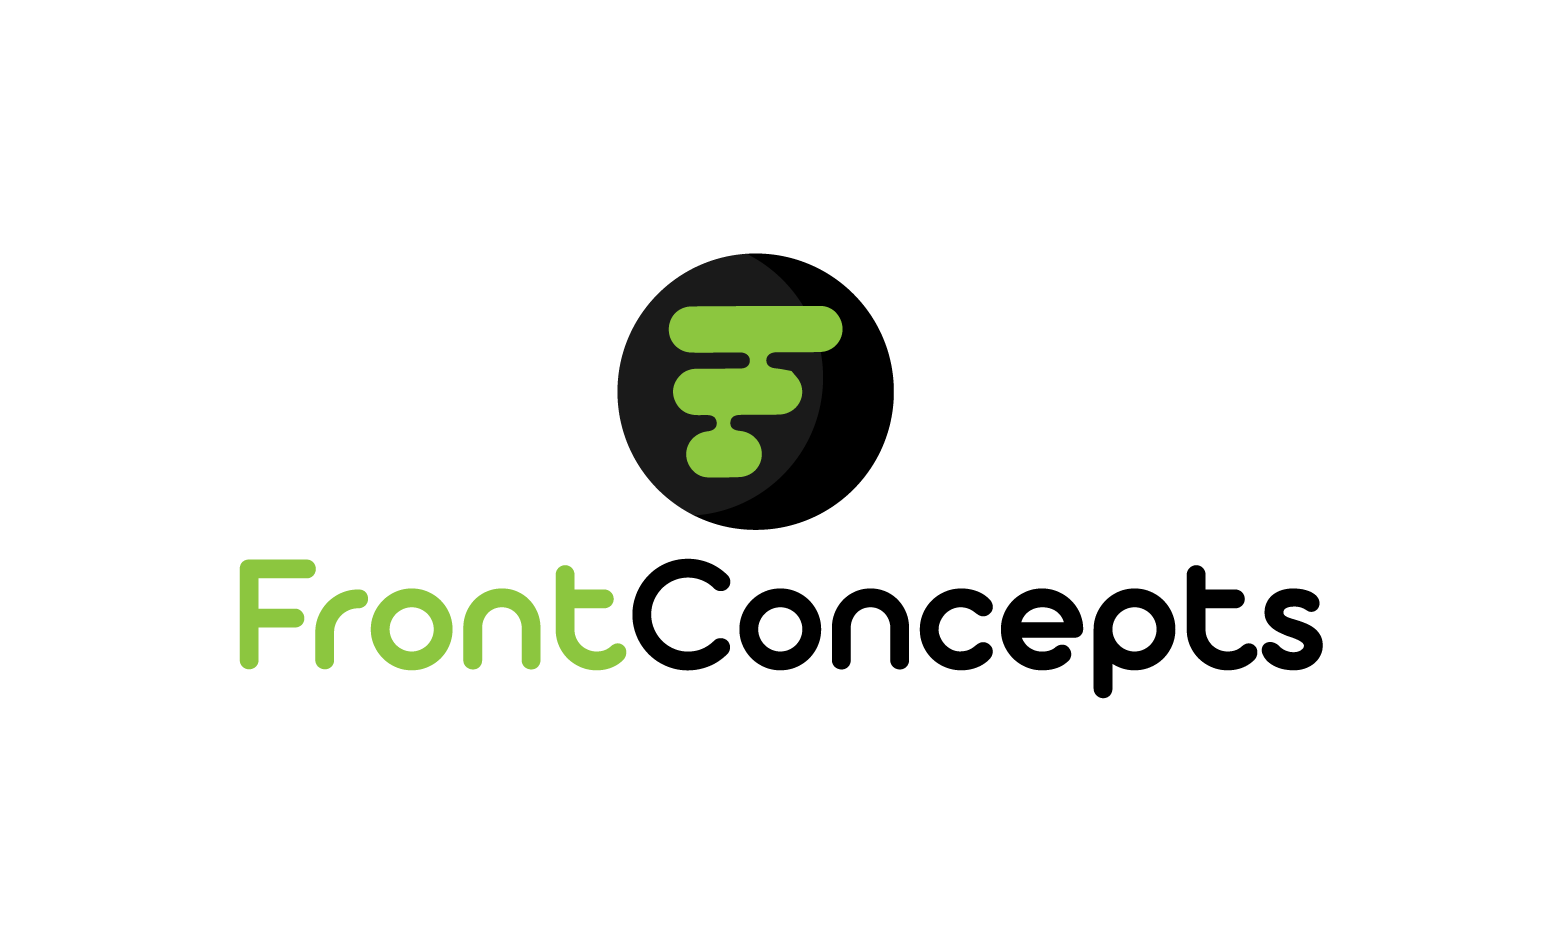 FrontConcepts.com - Creative brandable domain for sale